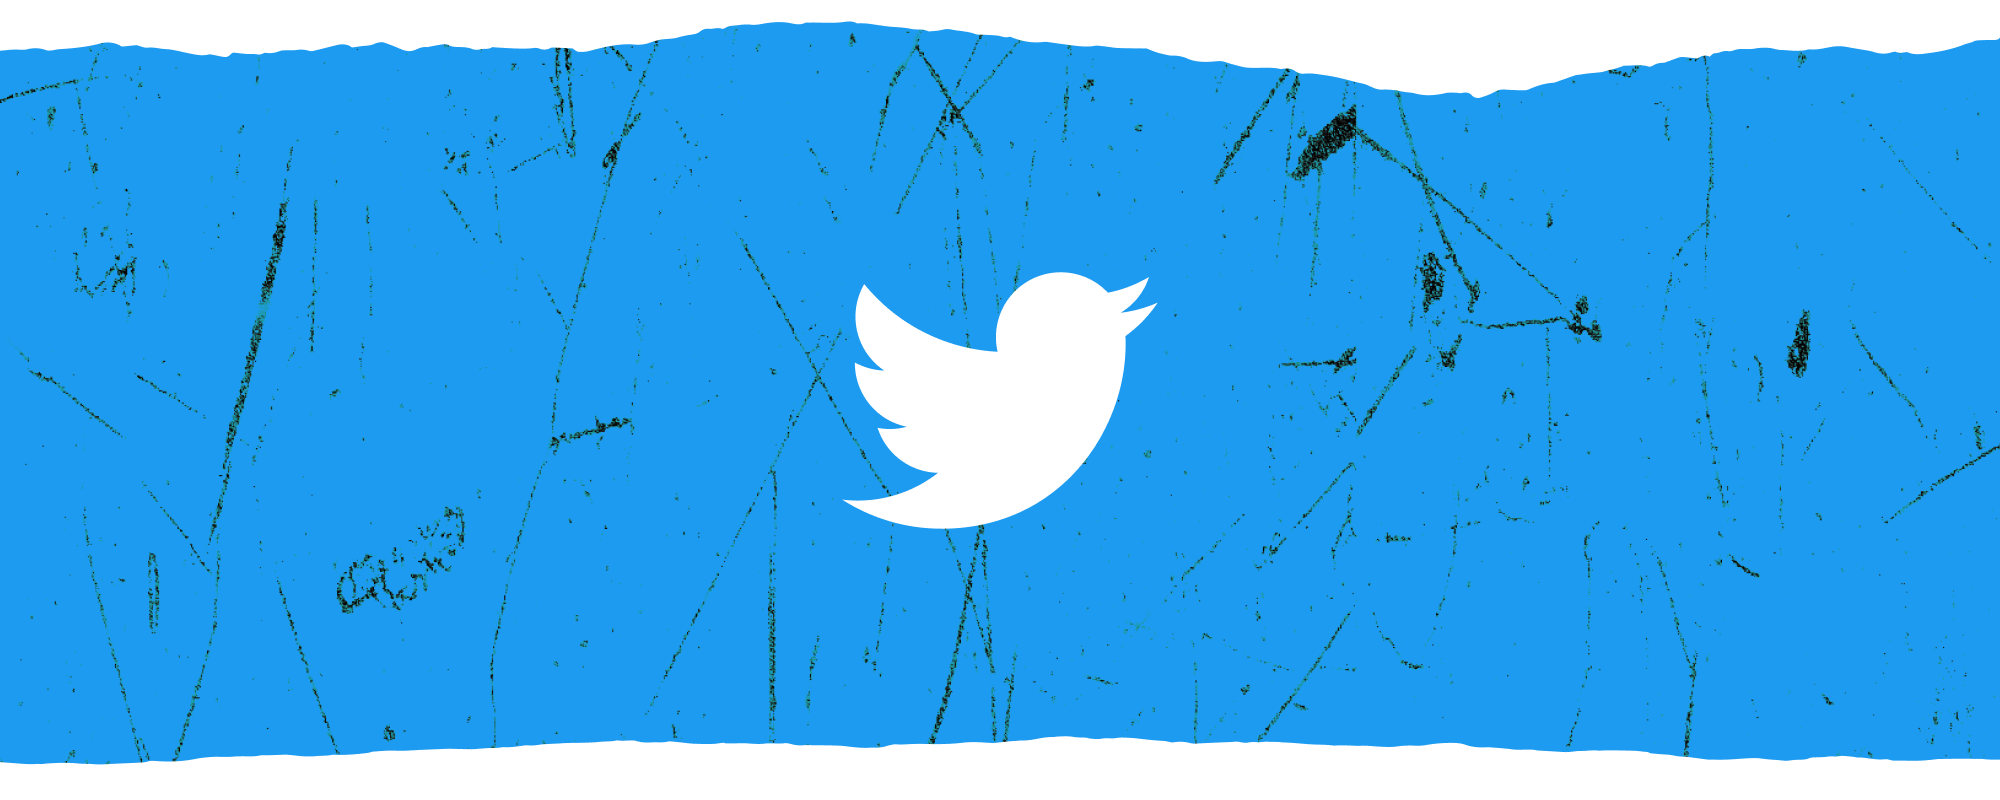 Białe logo na Twitterze przed teksturowanym poziomym sztandarem niebieskiego nałożonego na białą